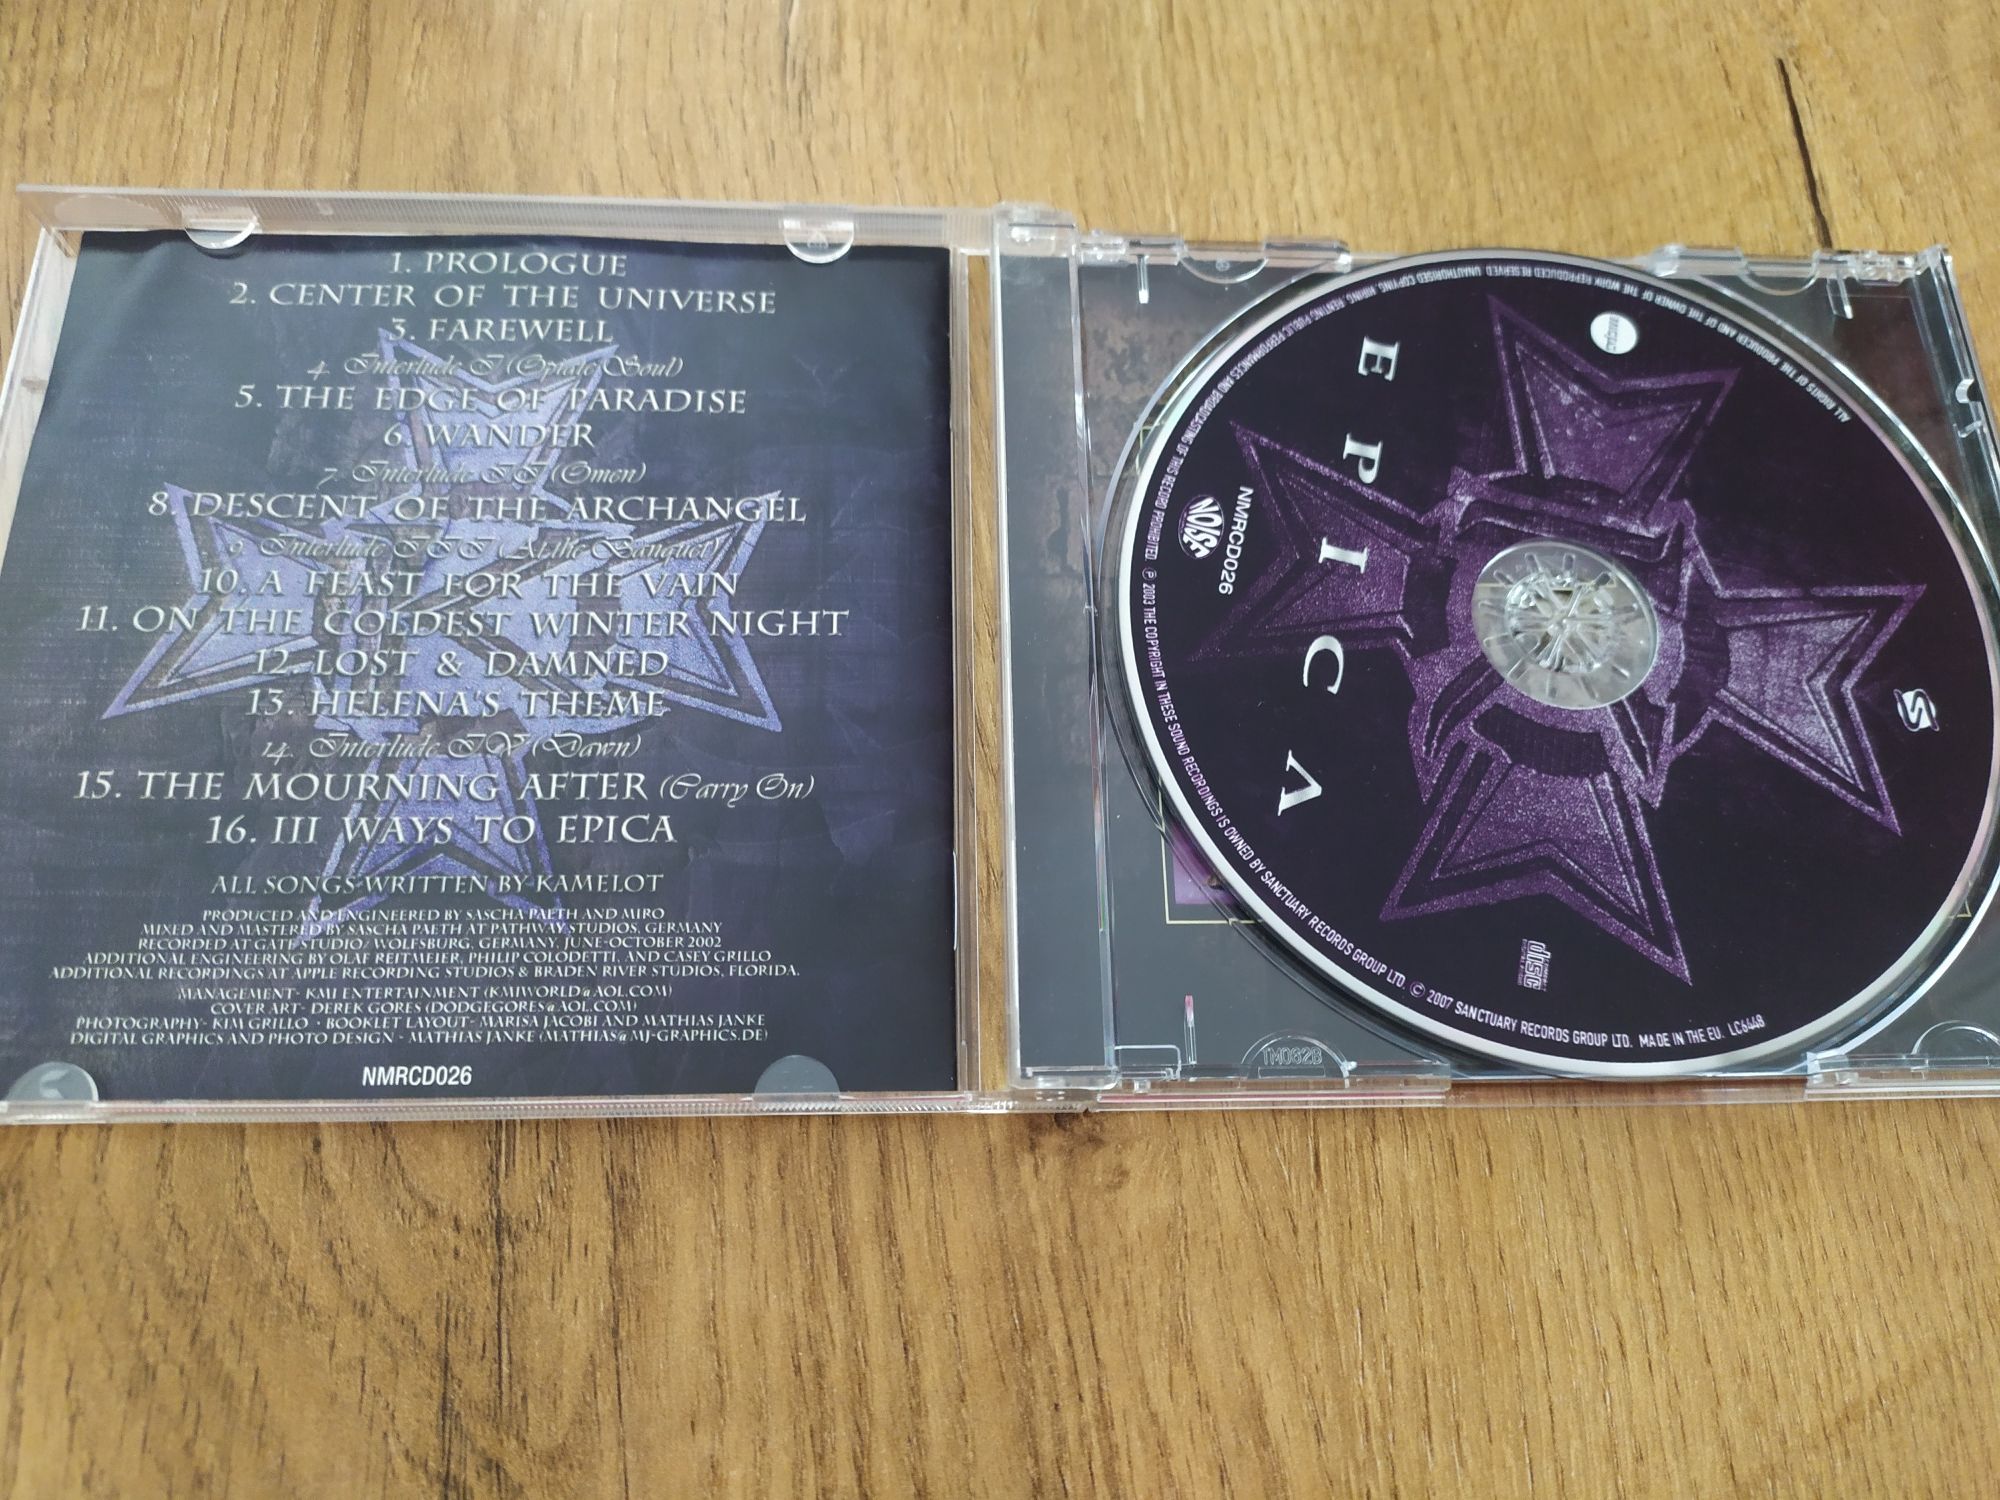 Kamelot Epica cd